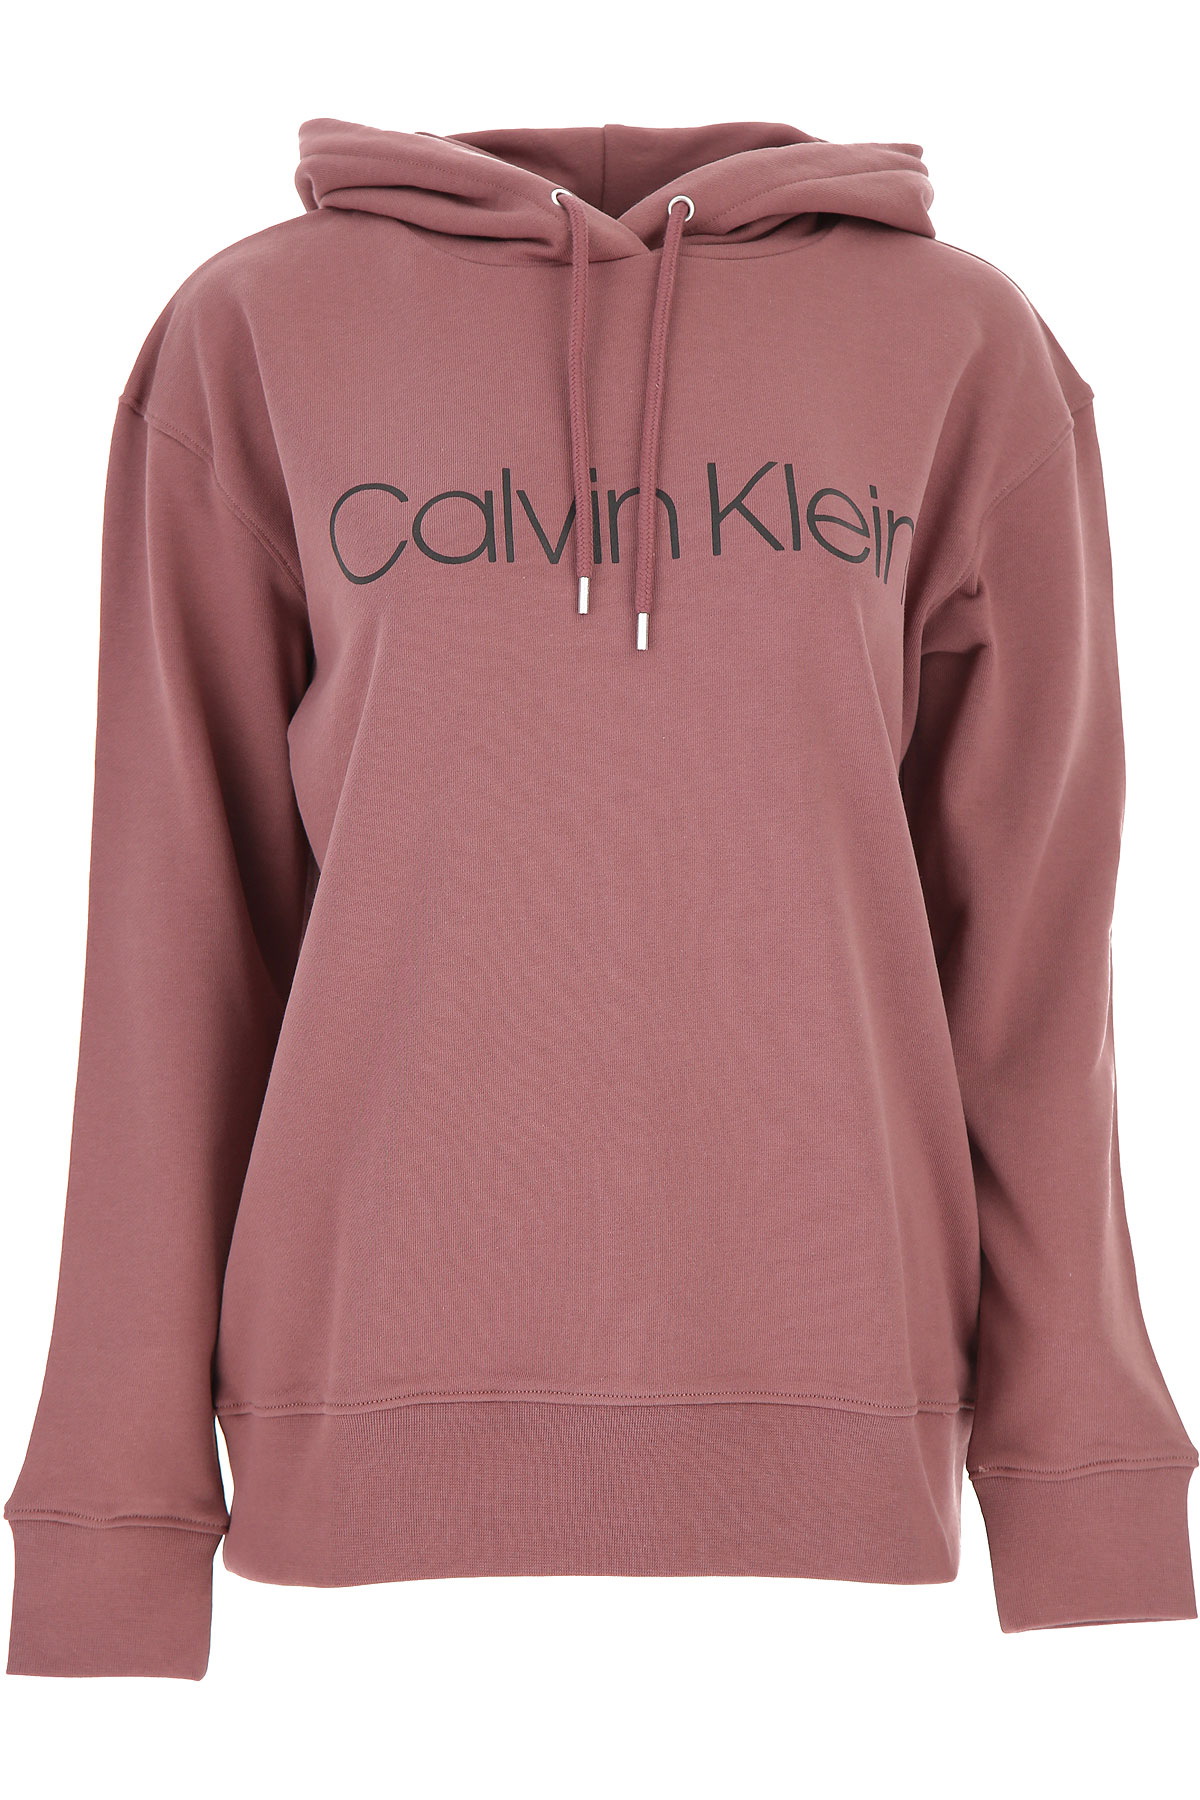 Calvin Klein Sweatshirt für Damen, Kapuzenpulli, Hoodie, Sweats Günstig im Sale, Zwiebelfarben, Baumwolle, 2017, 38 40 M